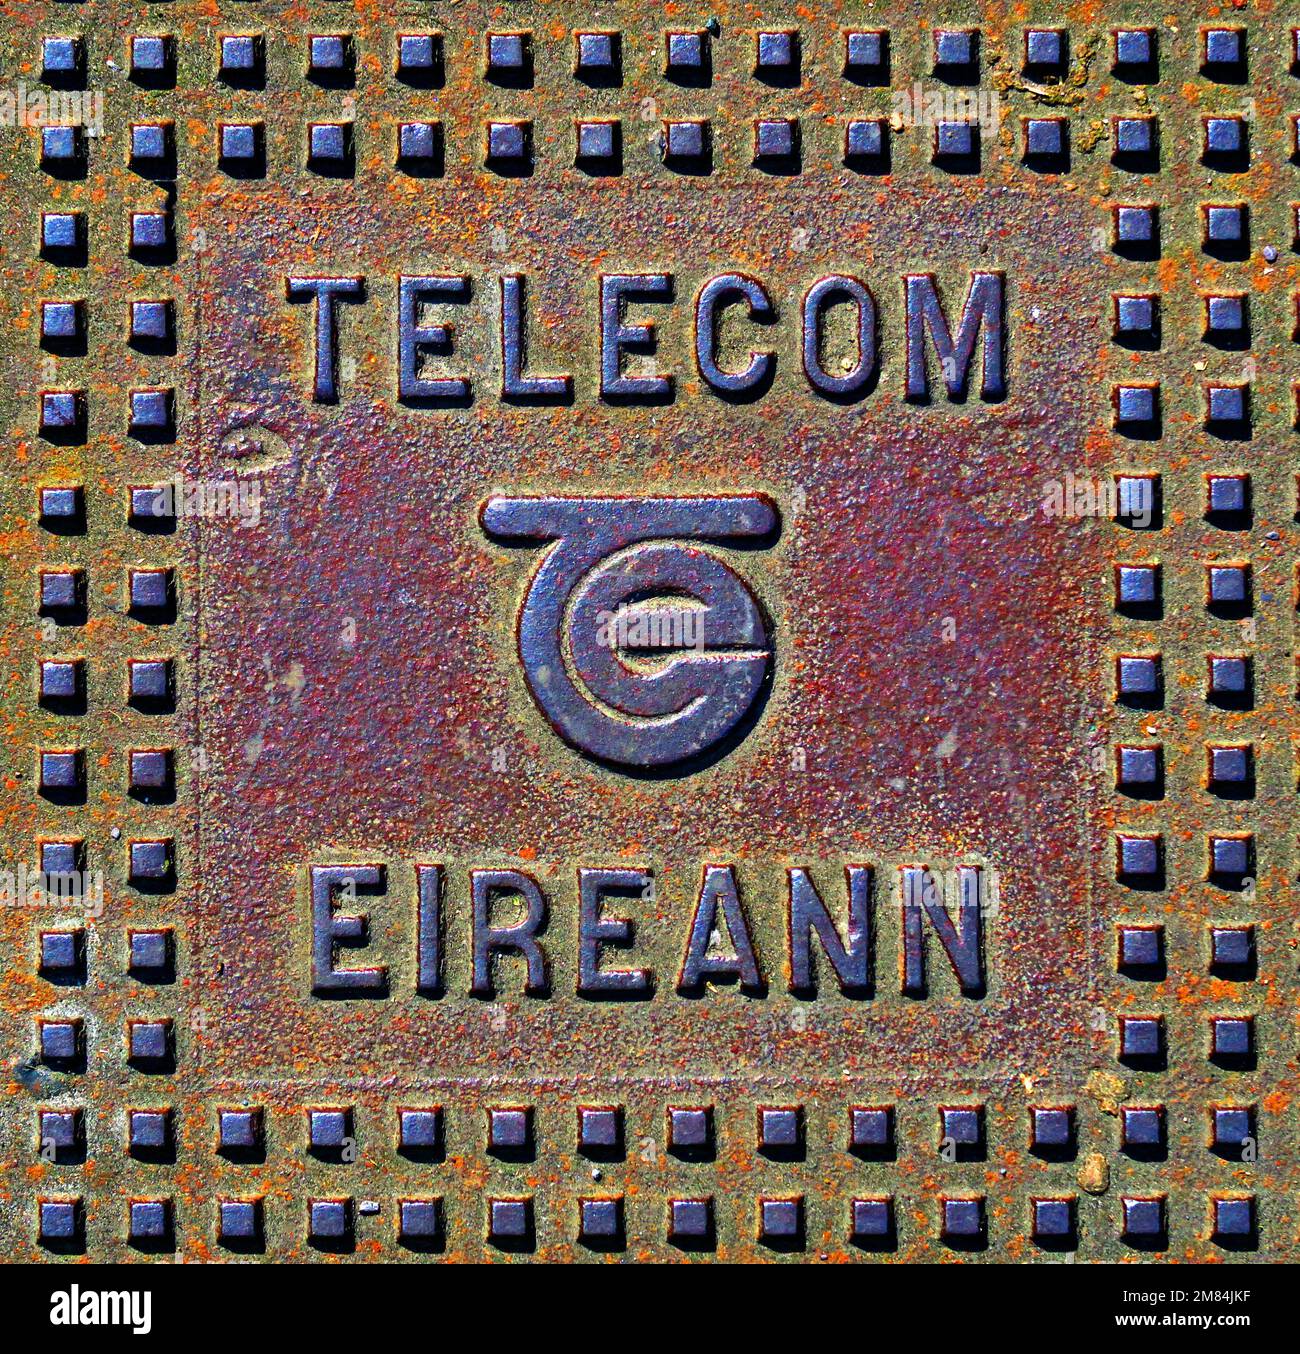 Telecom Eireann, réseau de fonte, Dublin, Irlande, Maintenant Eircom Banque D'Images